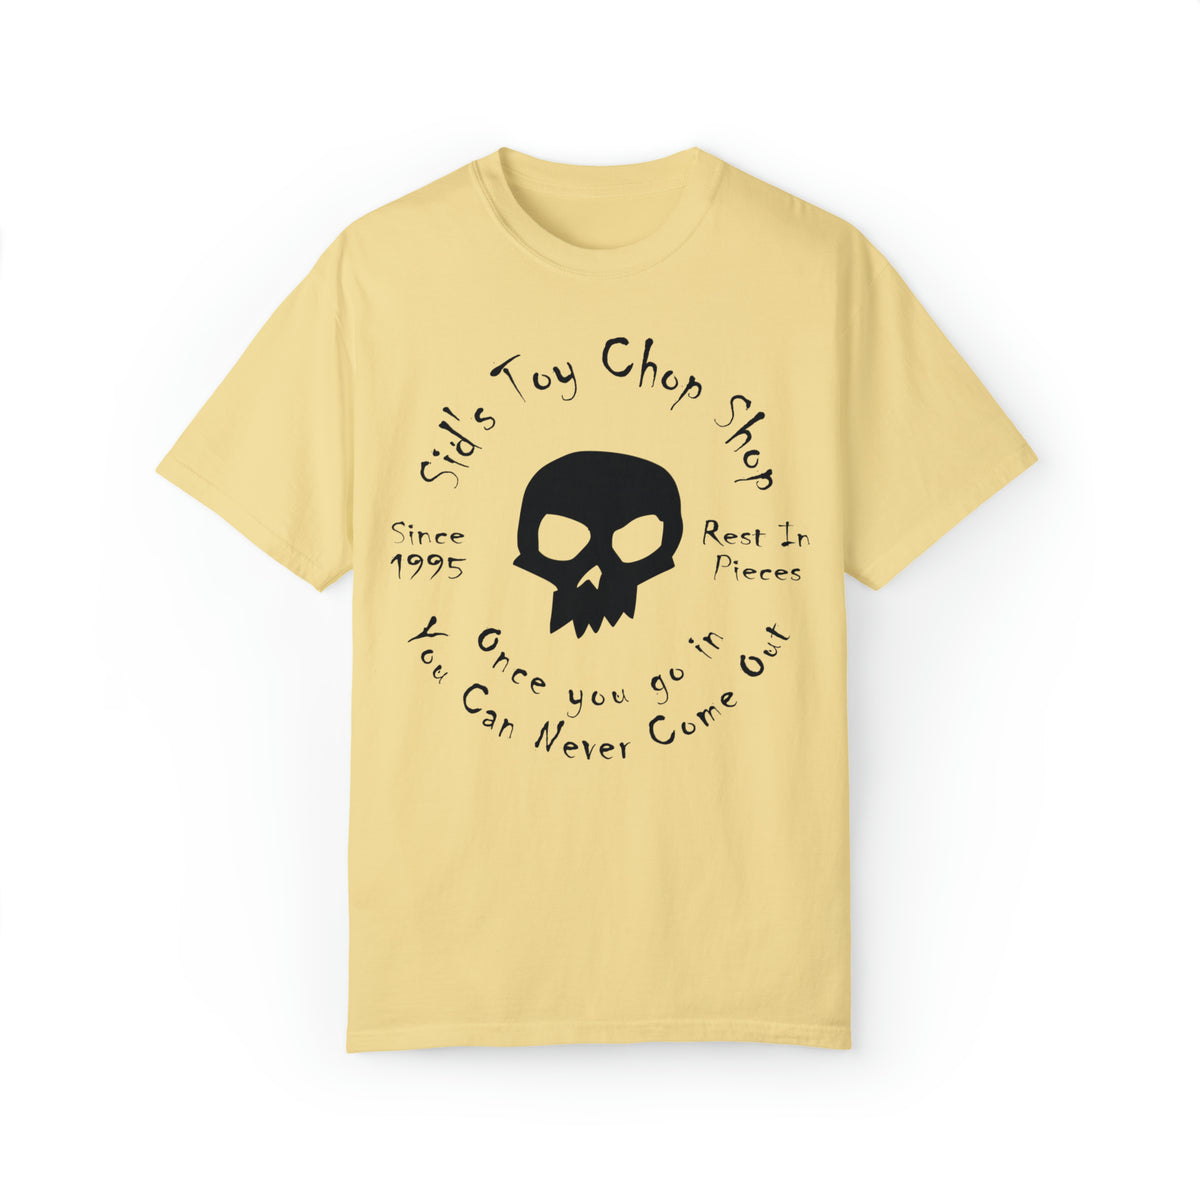 Sid's Toy Chop Shop Comfort Colors Unisex Garment-Dyed T-shirt